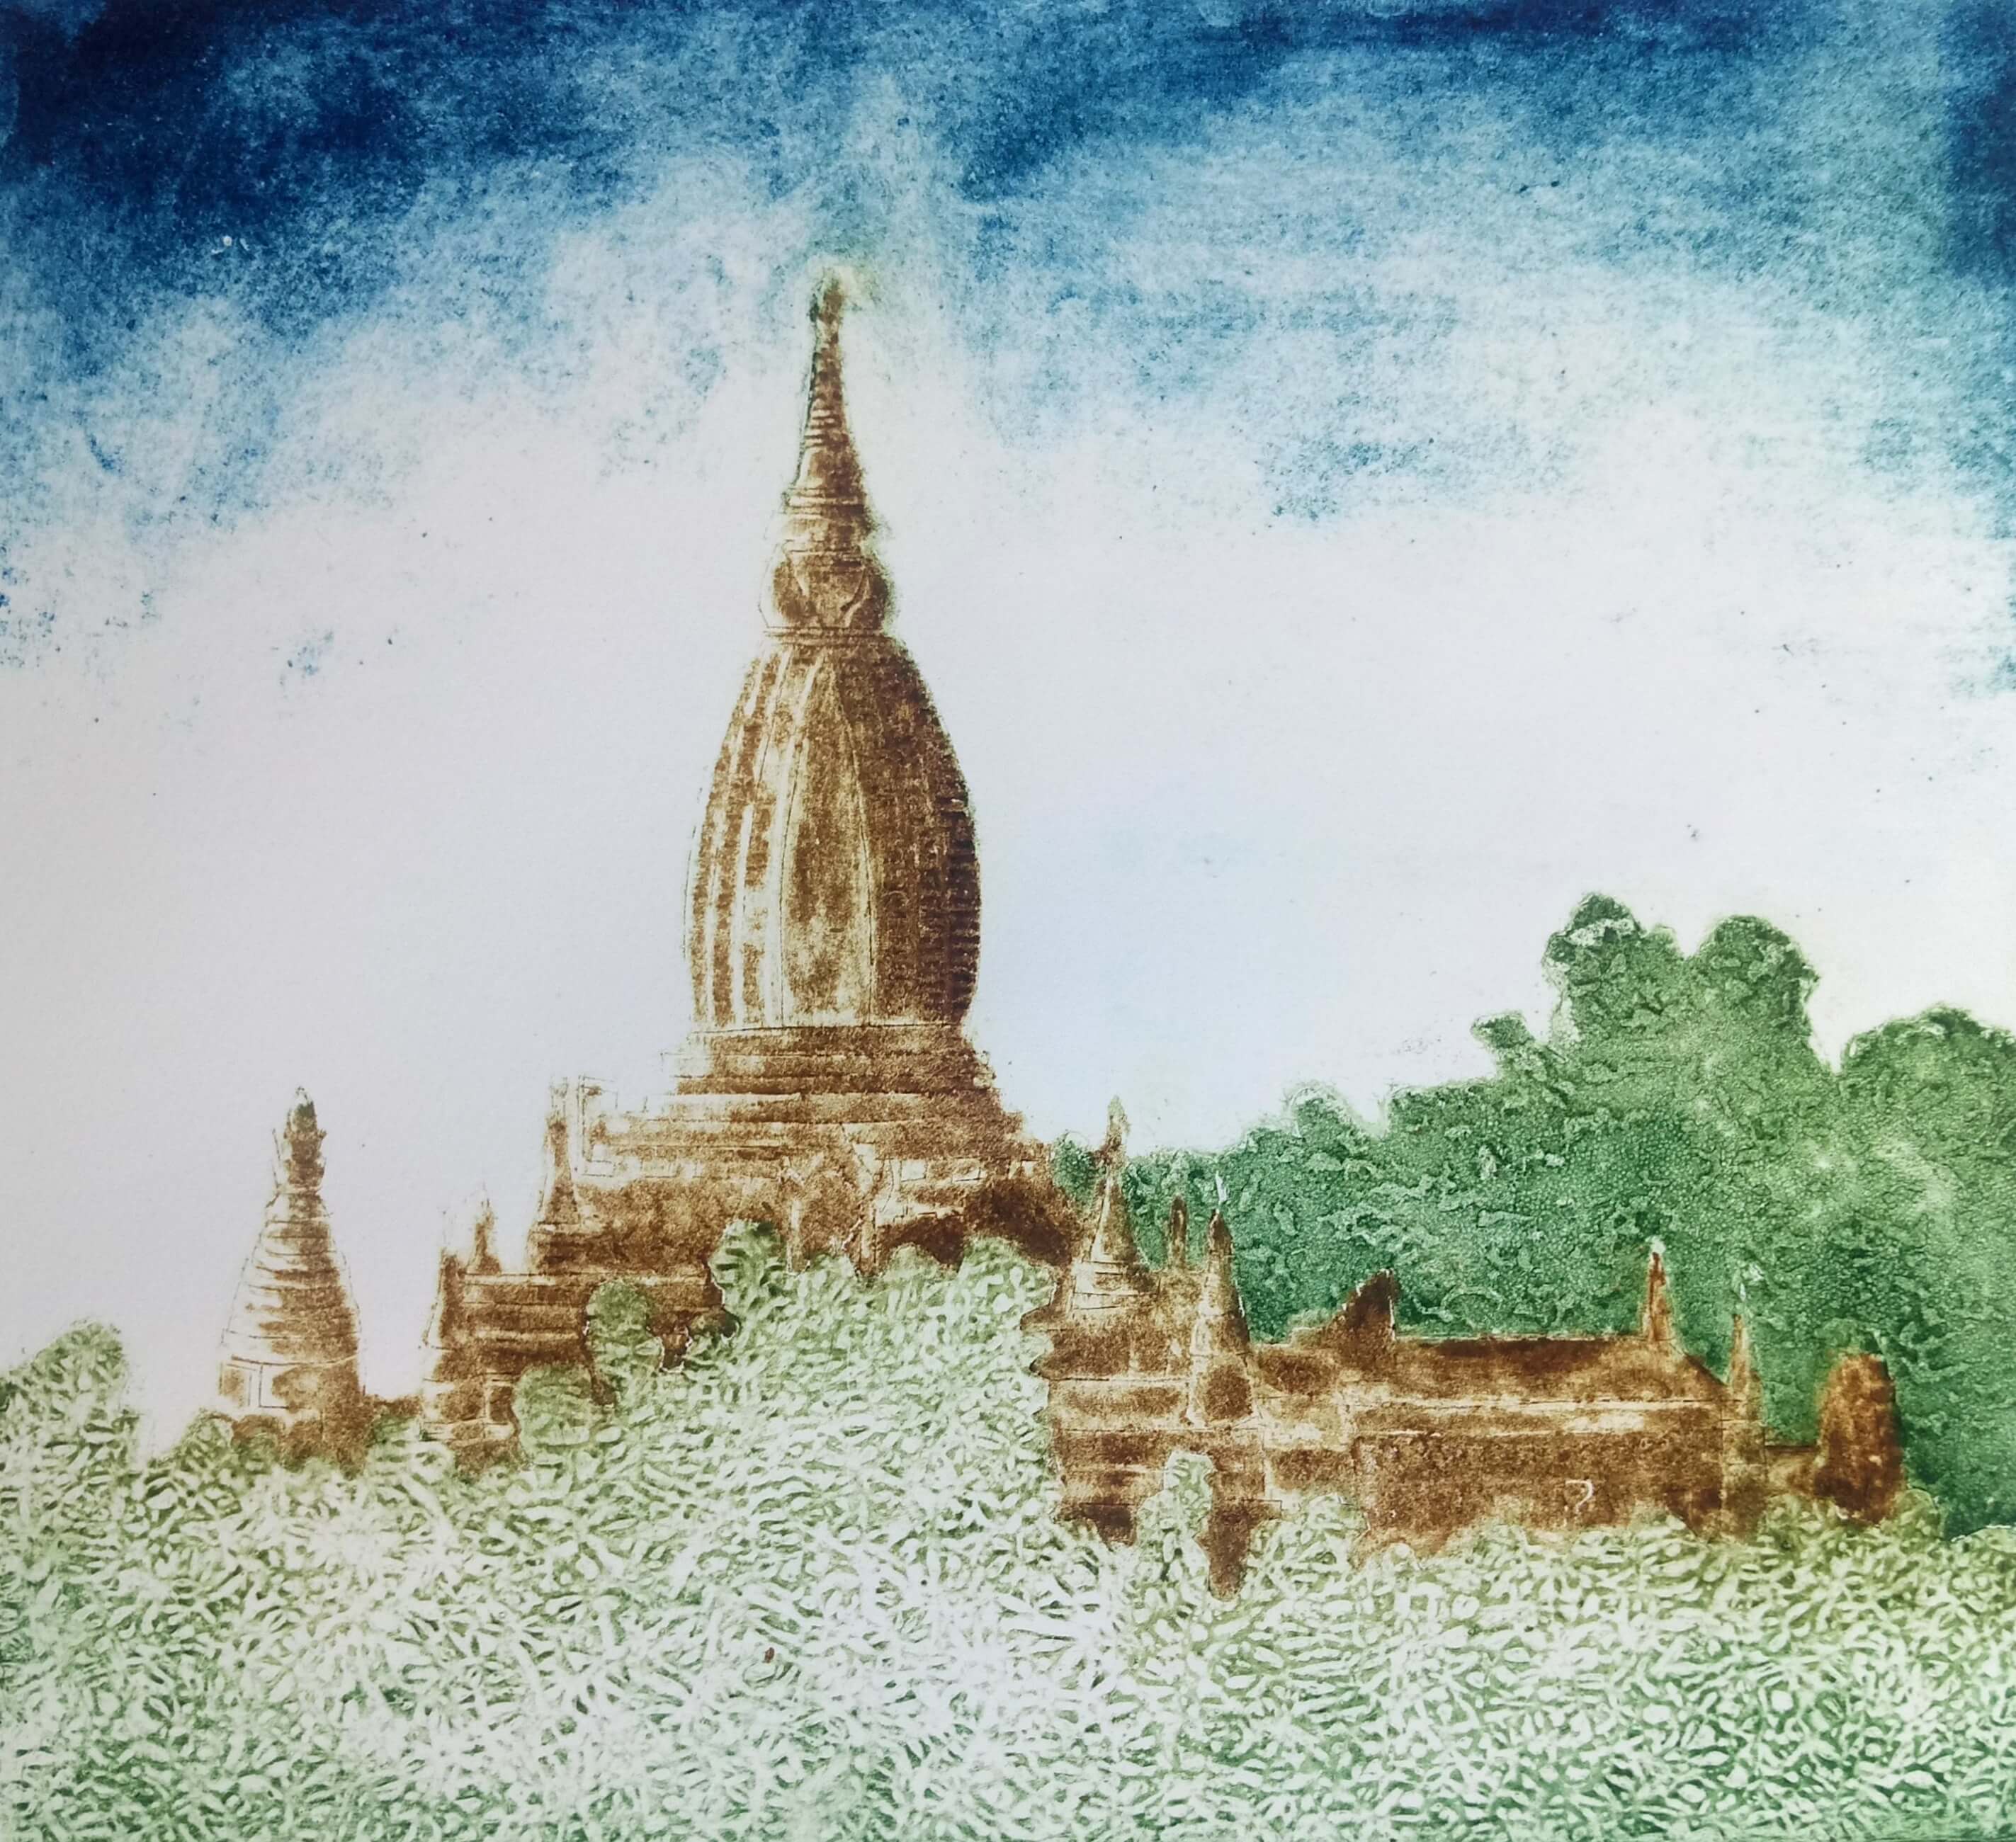 Temple in Bagan, Burma